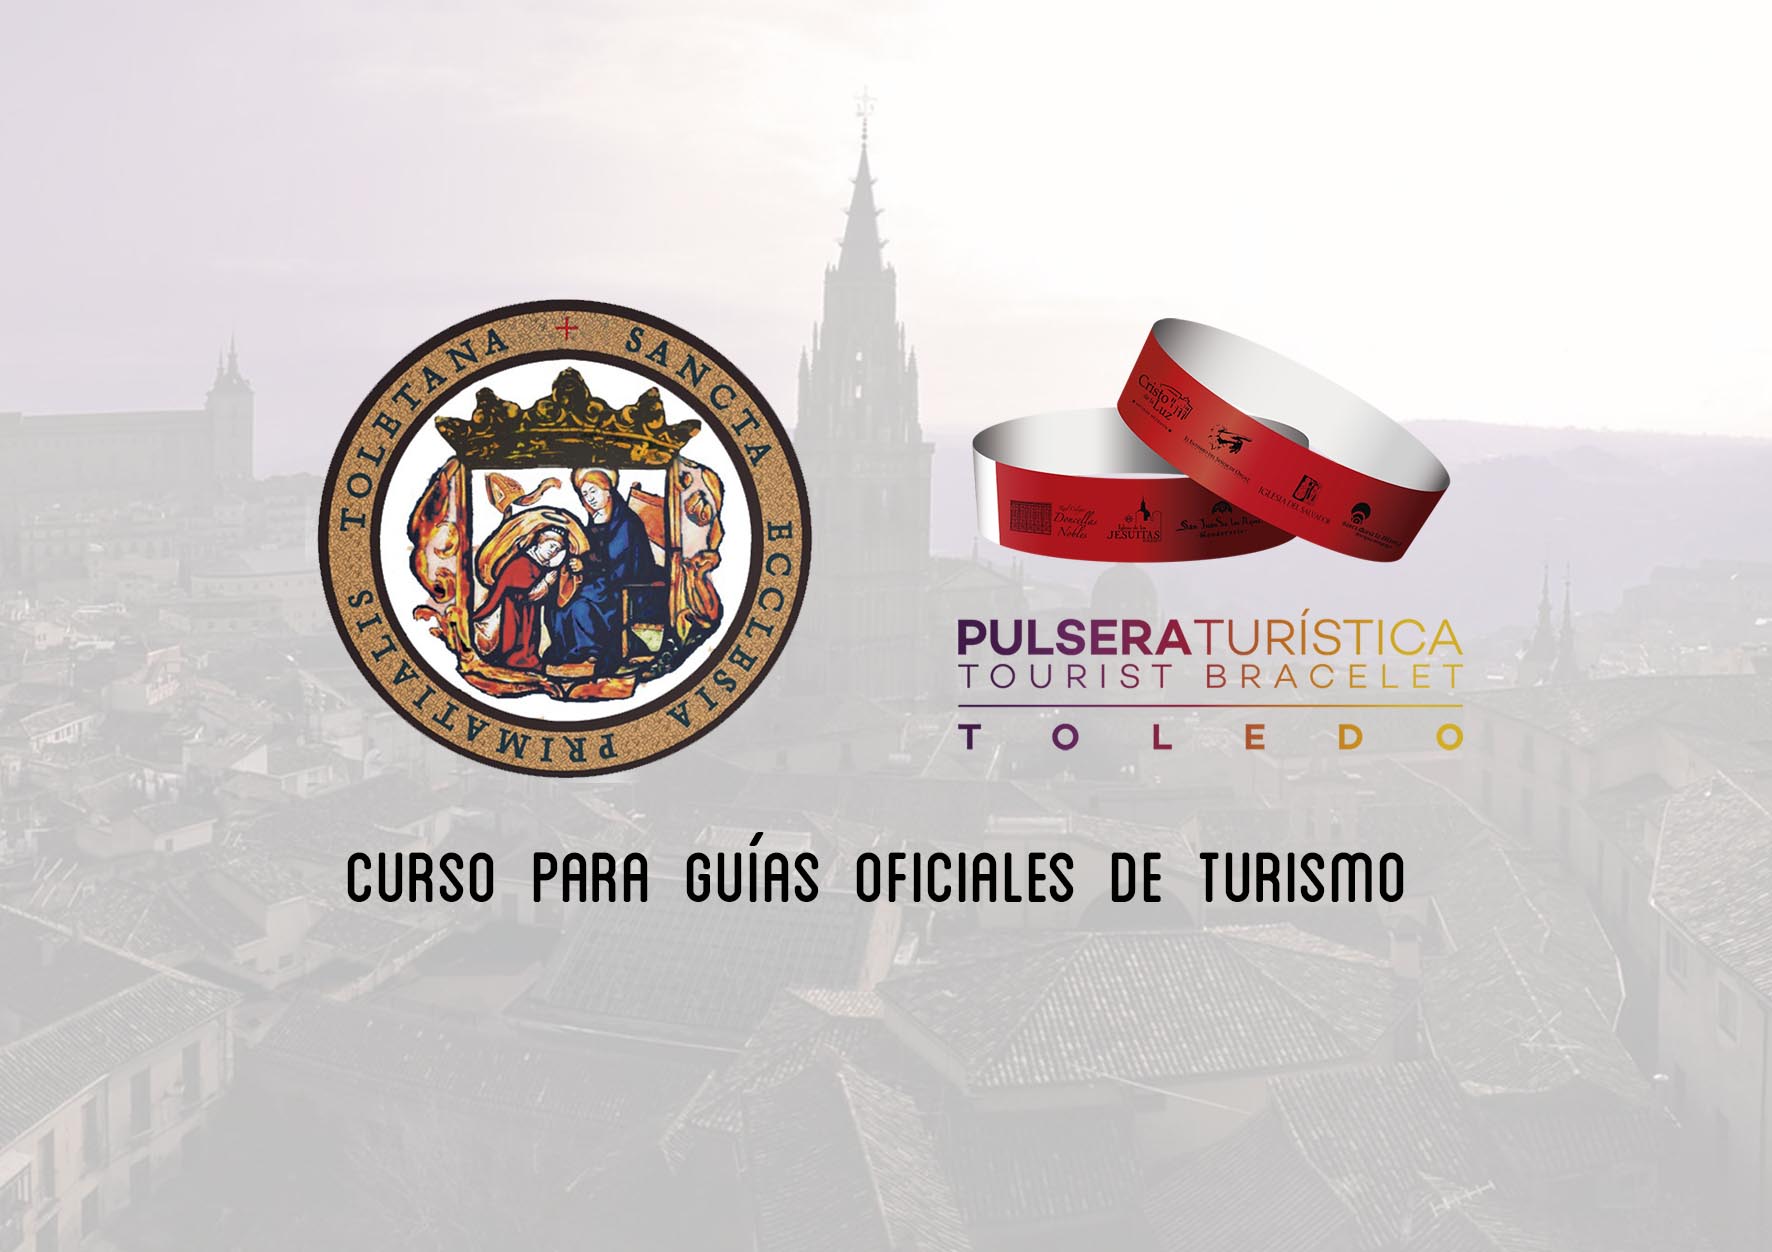 Curso para guías de turismo sobre Catedral y Pulsera turística